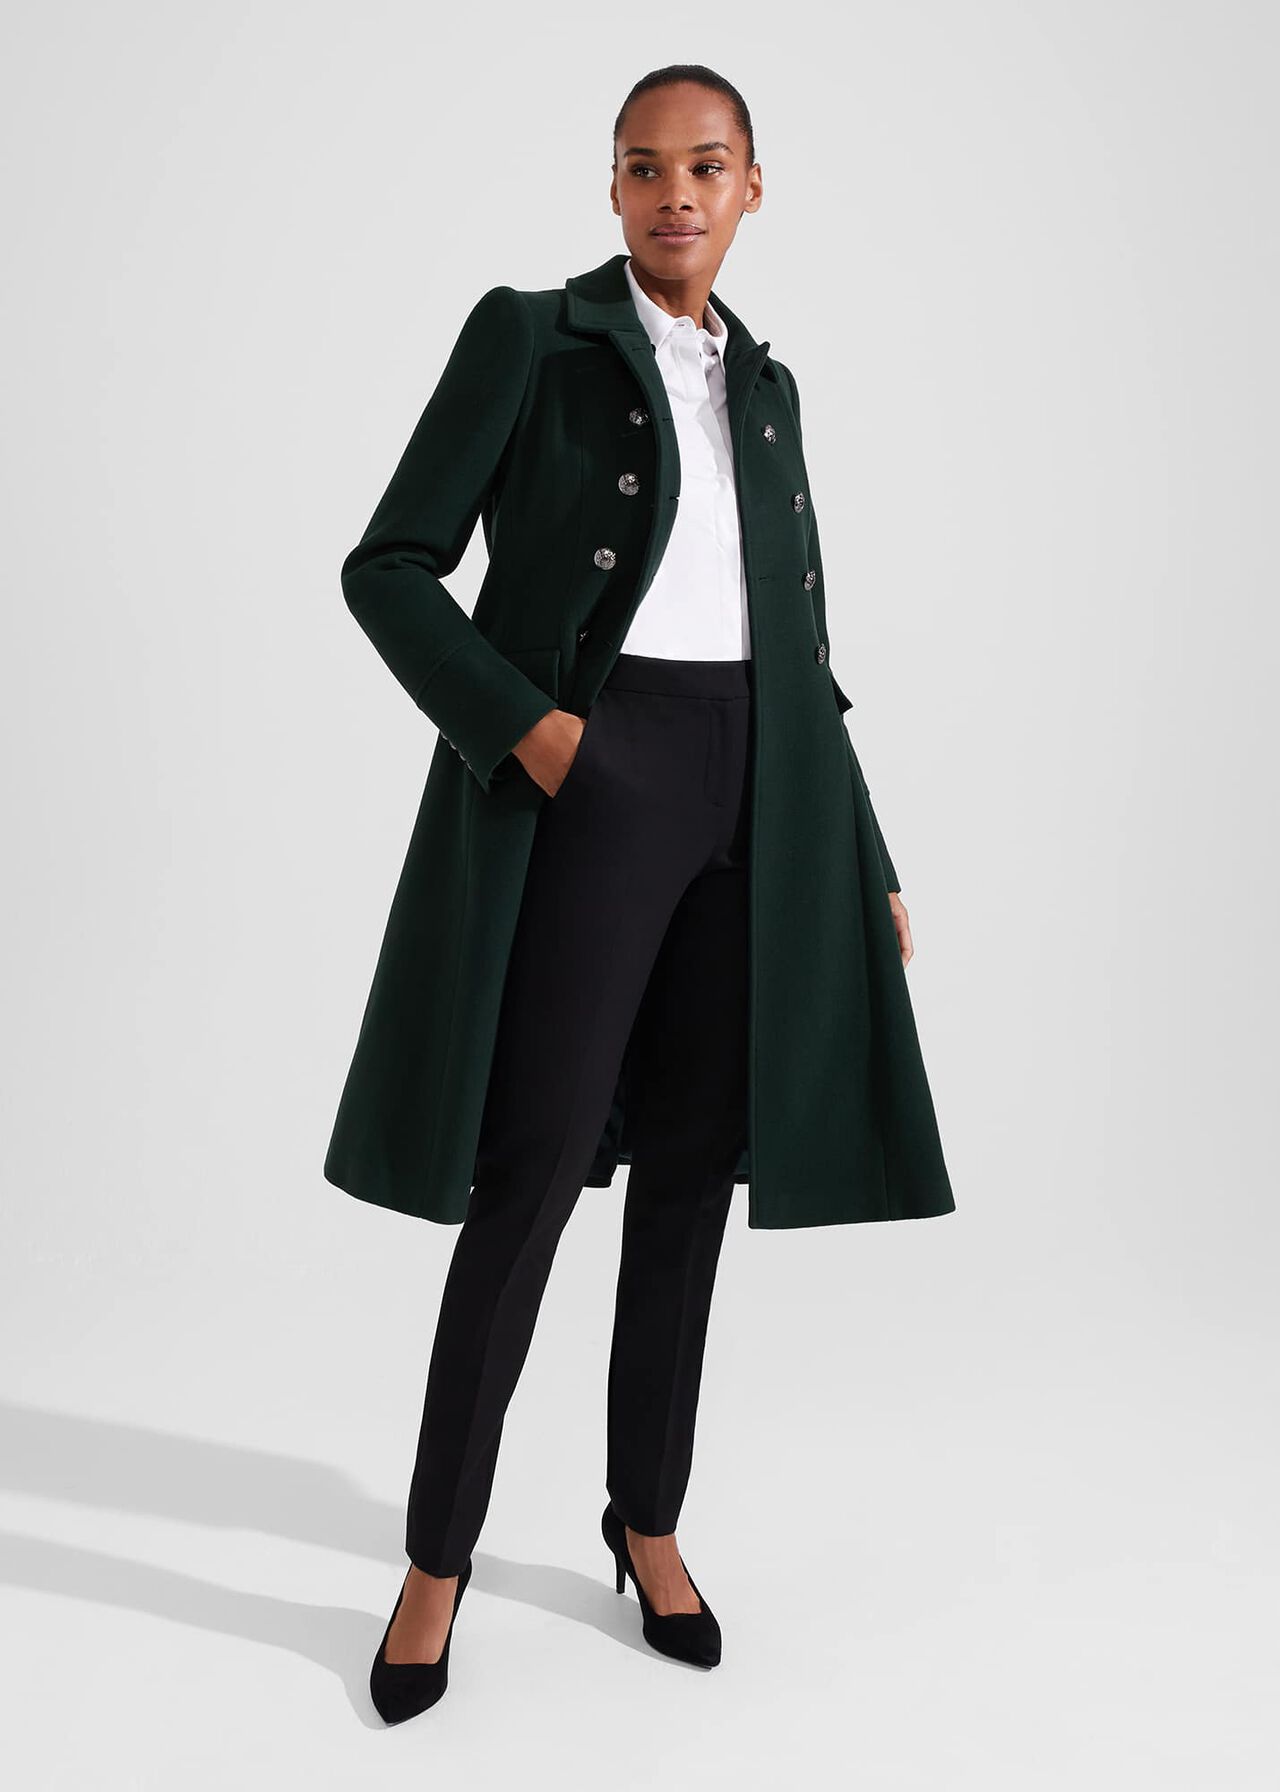 Clarisse Wool Blend Coat, Green, hi-res